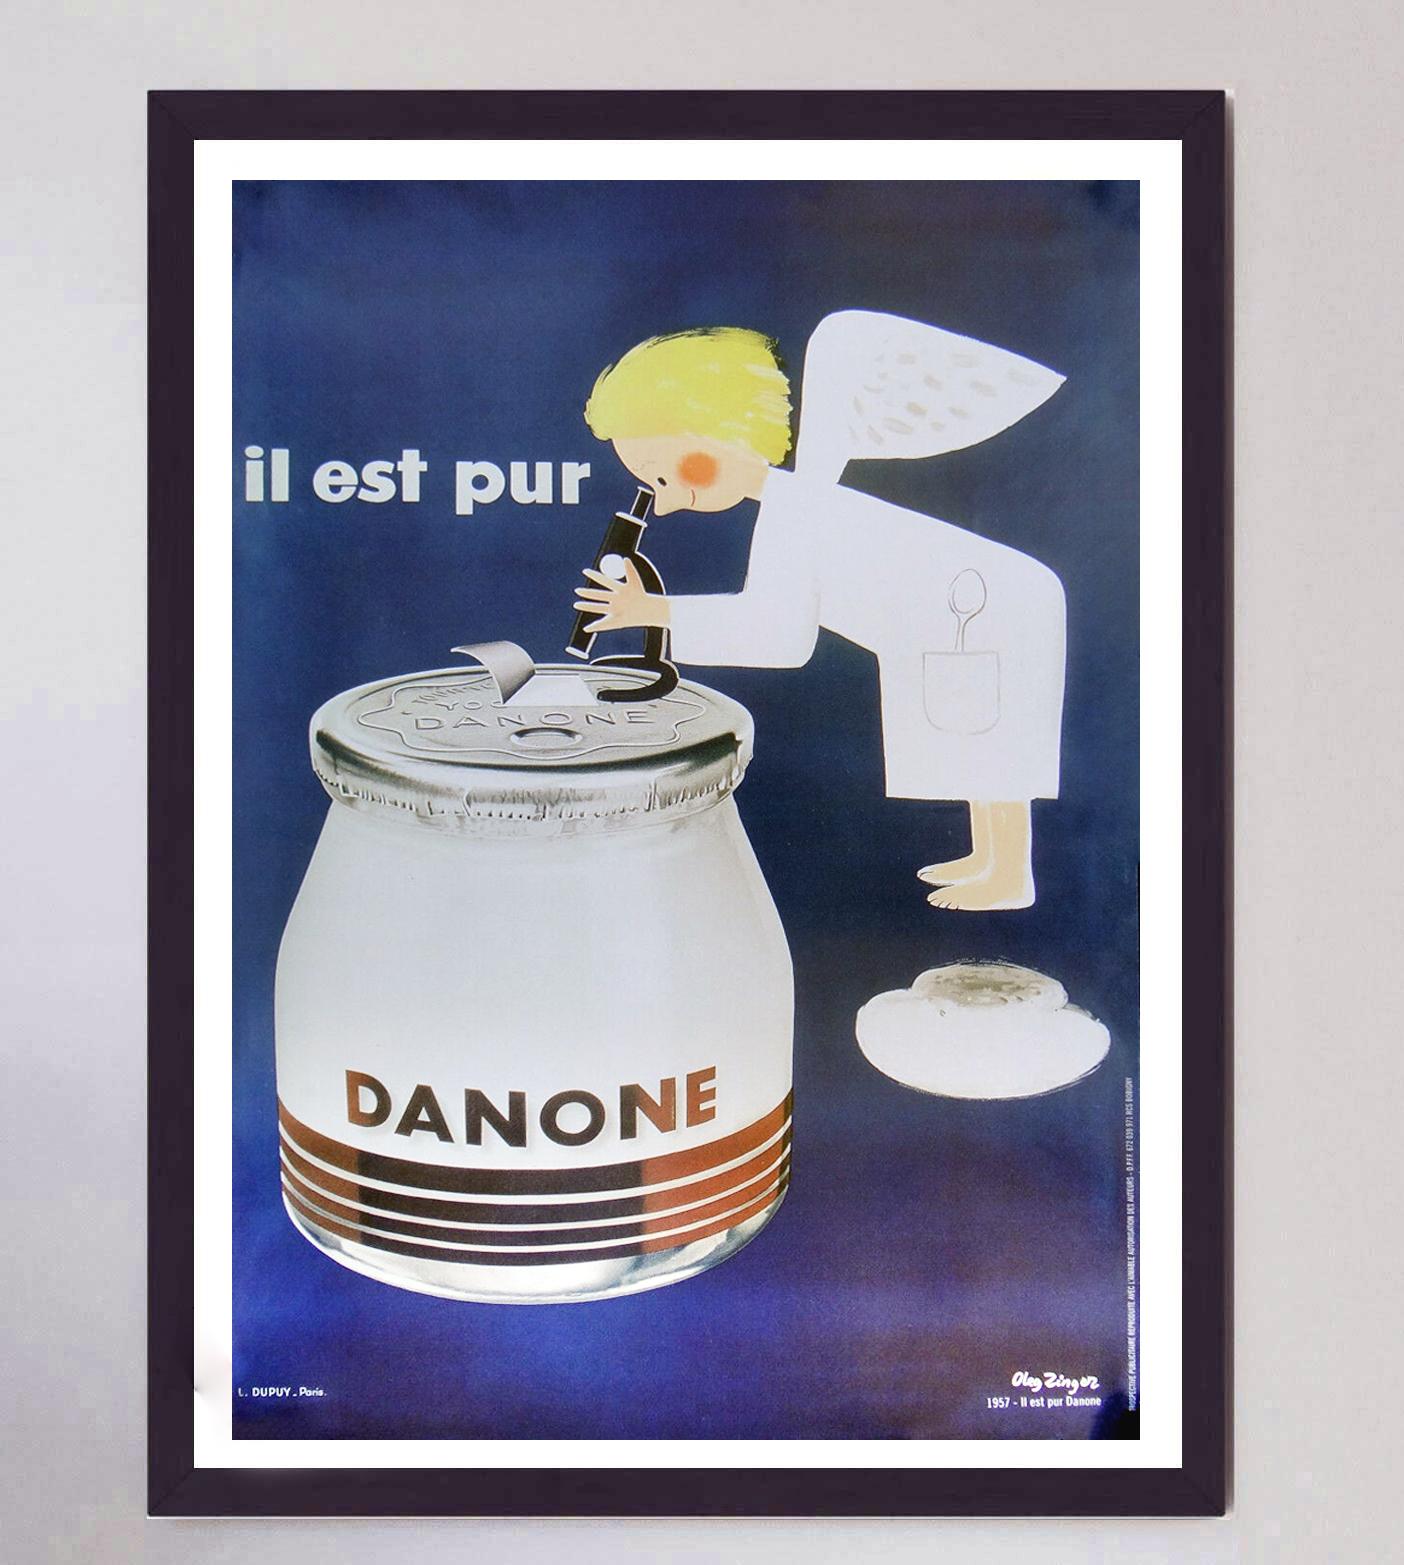 1957 Danone - Il Est Pur Original Vintage Poster In Good Condition For Sale In Winchester, GB